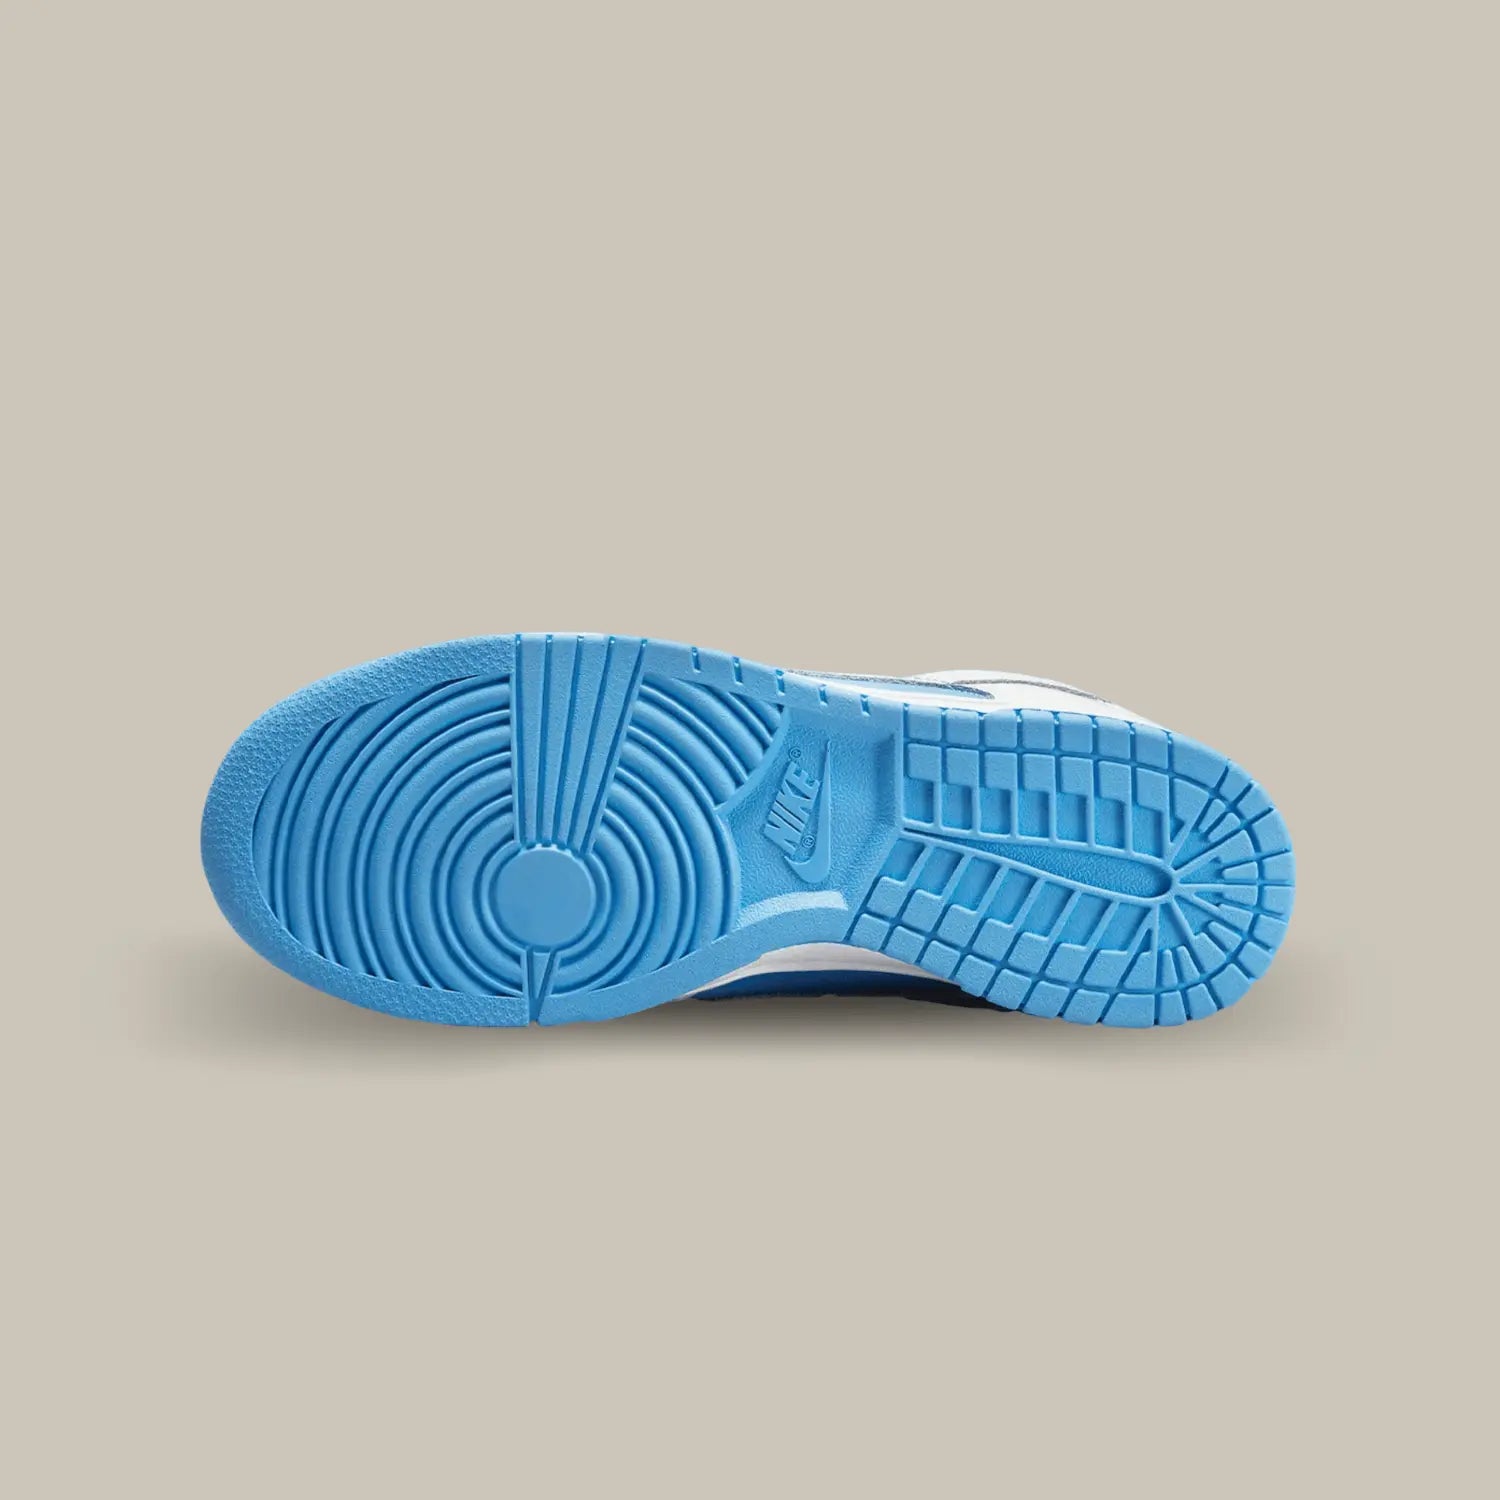 La semelle de la Nike Dunk Low Reverse UNC de couleur bleu ciel.